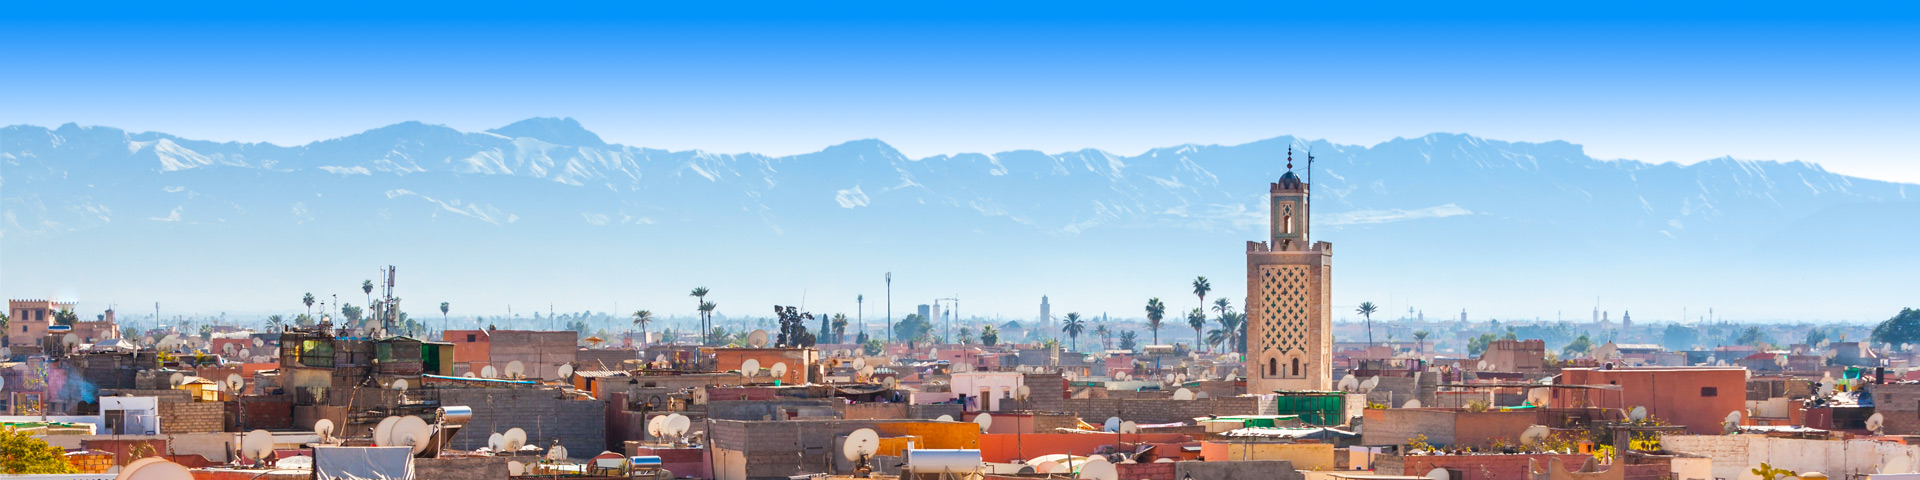 Skyline van Marrakech met bergen op de achtergrond